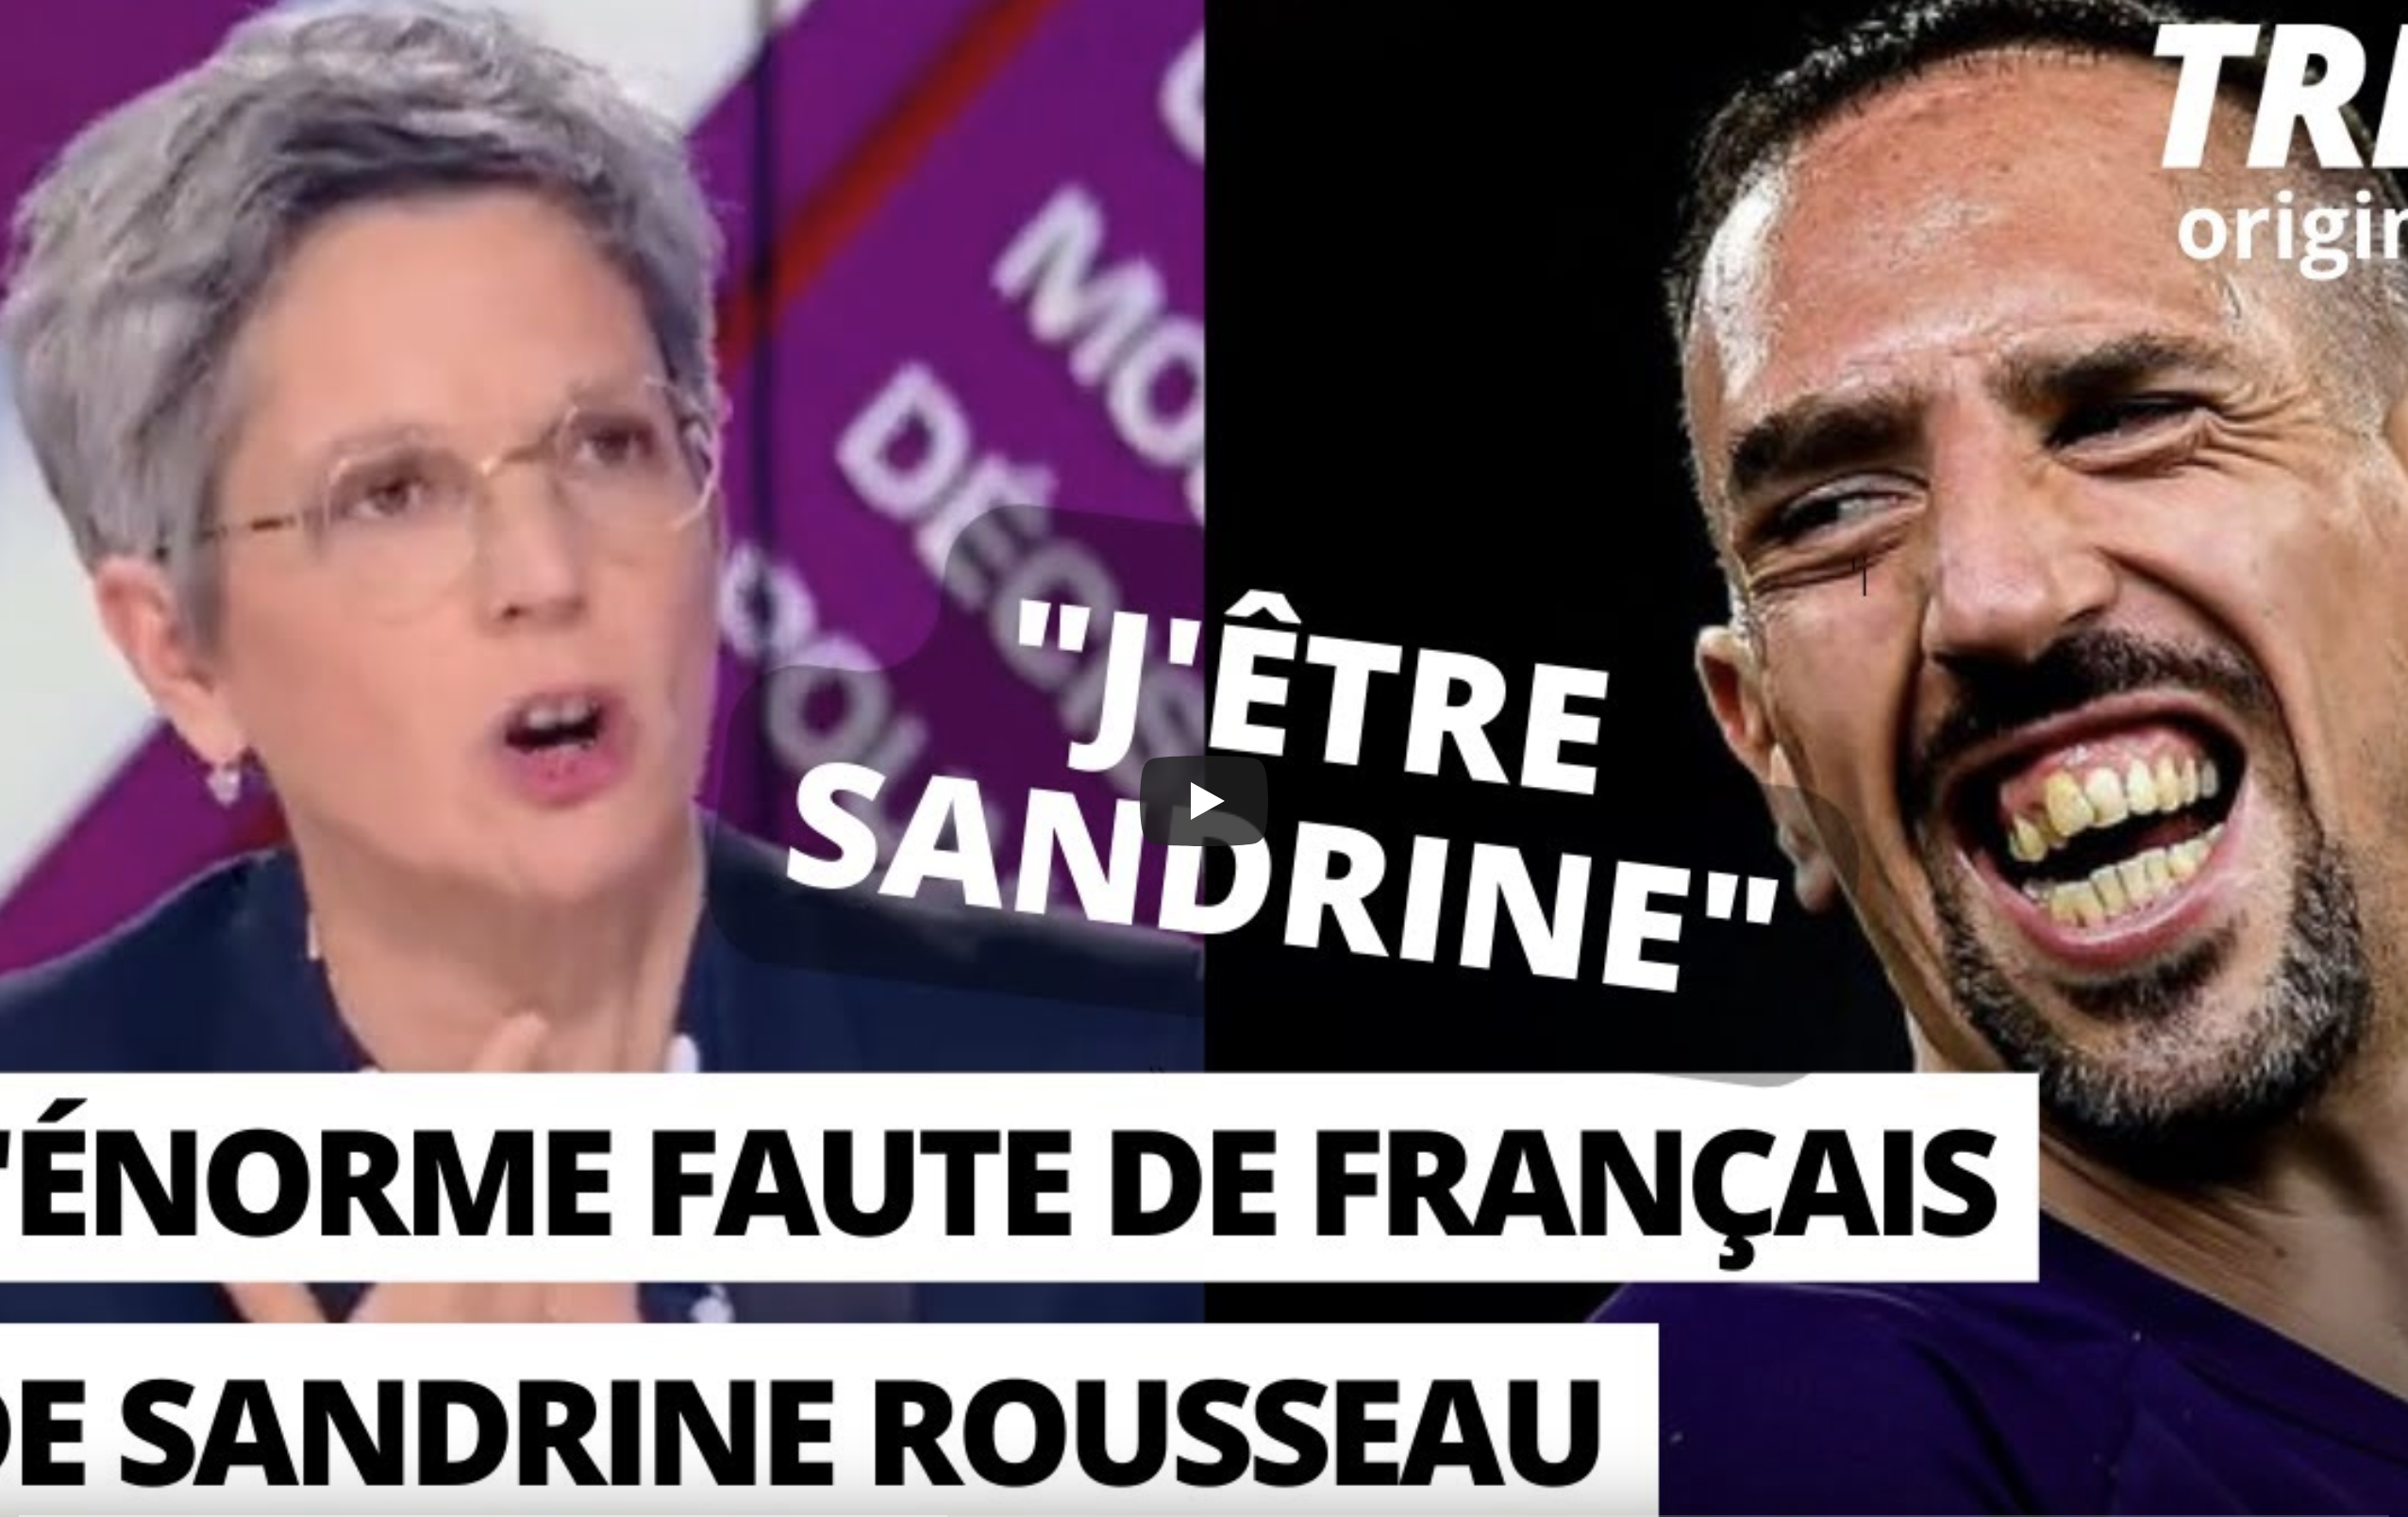 Sandrine Rousseau prête allégeance à Franck Ribéry en faisant une grave faute de français (VIDÉO)